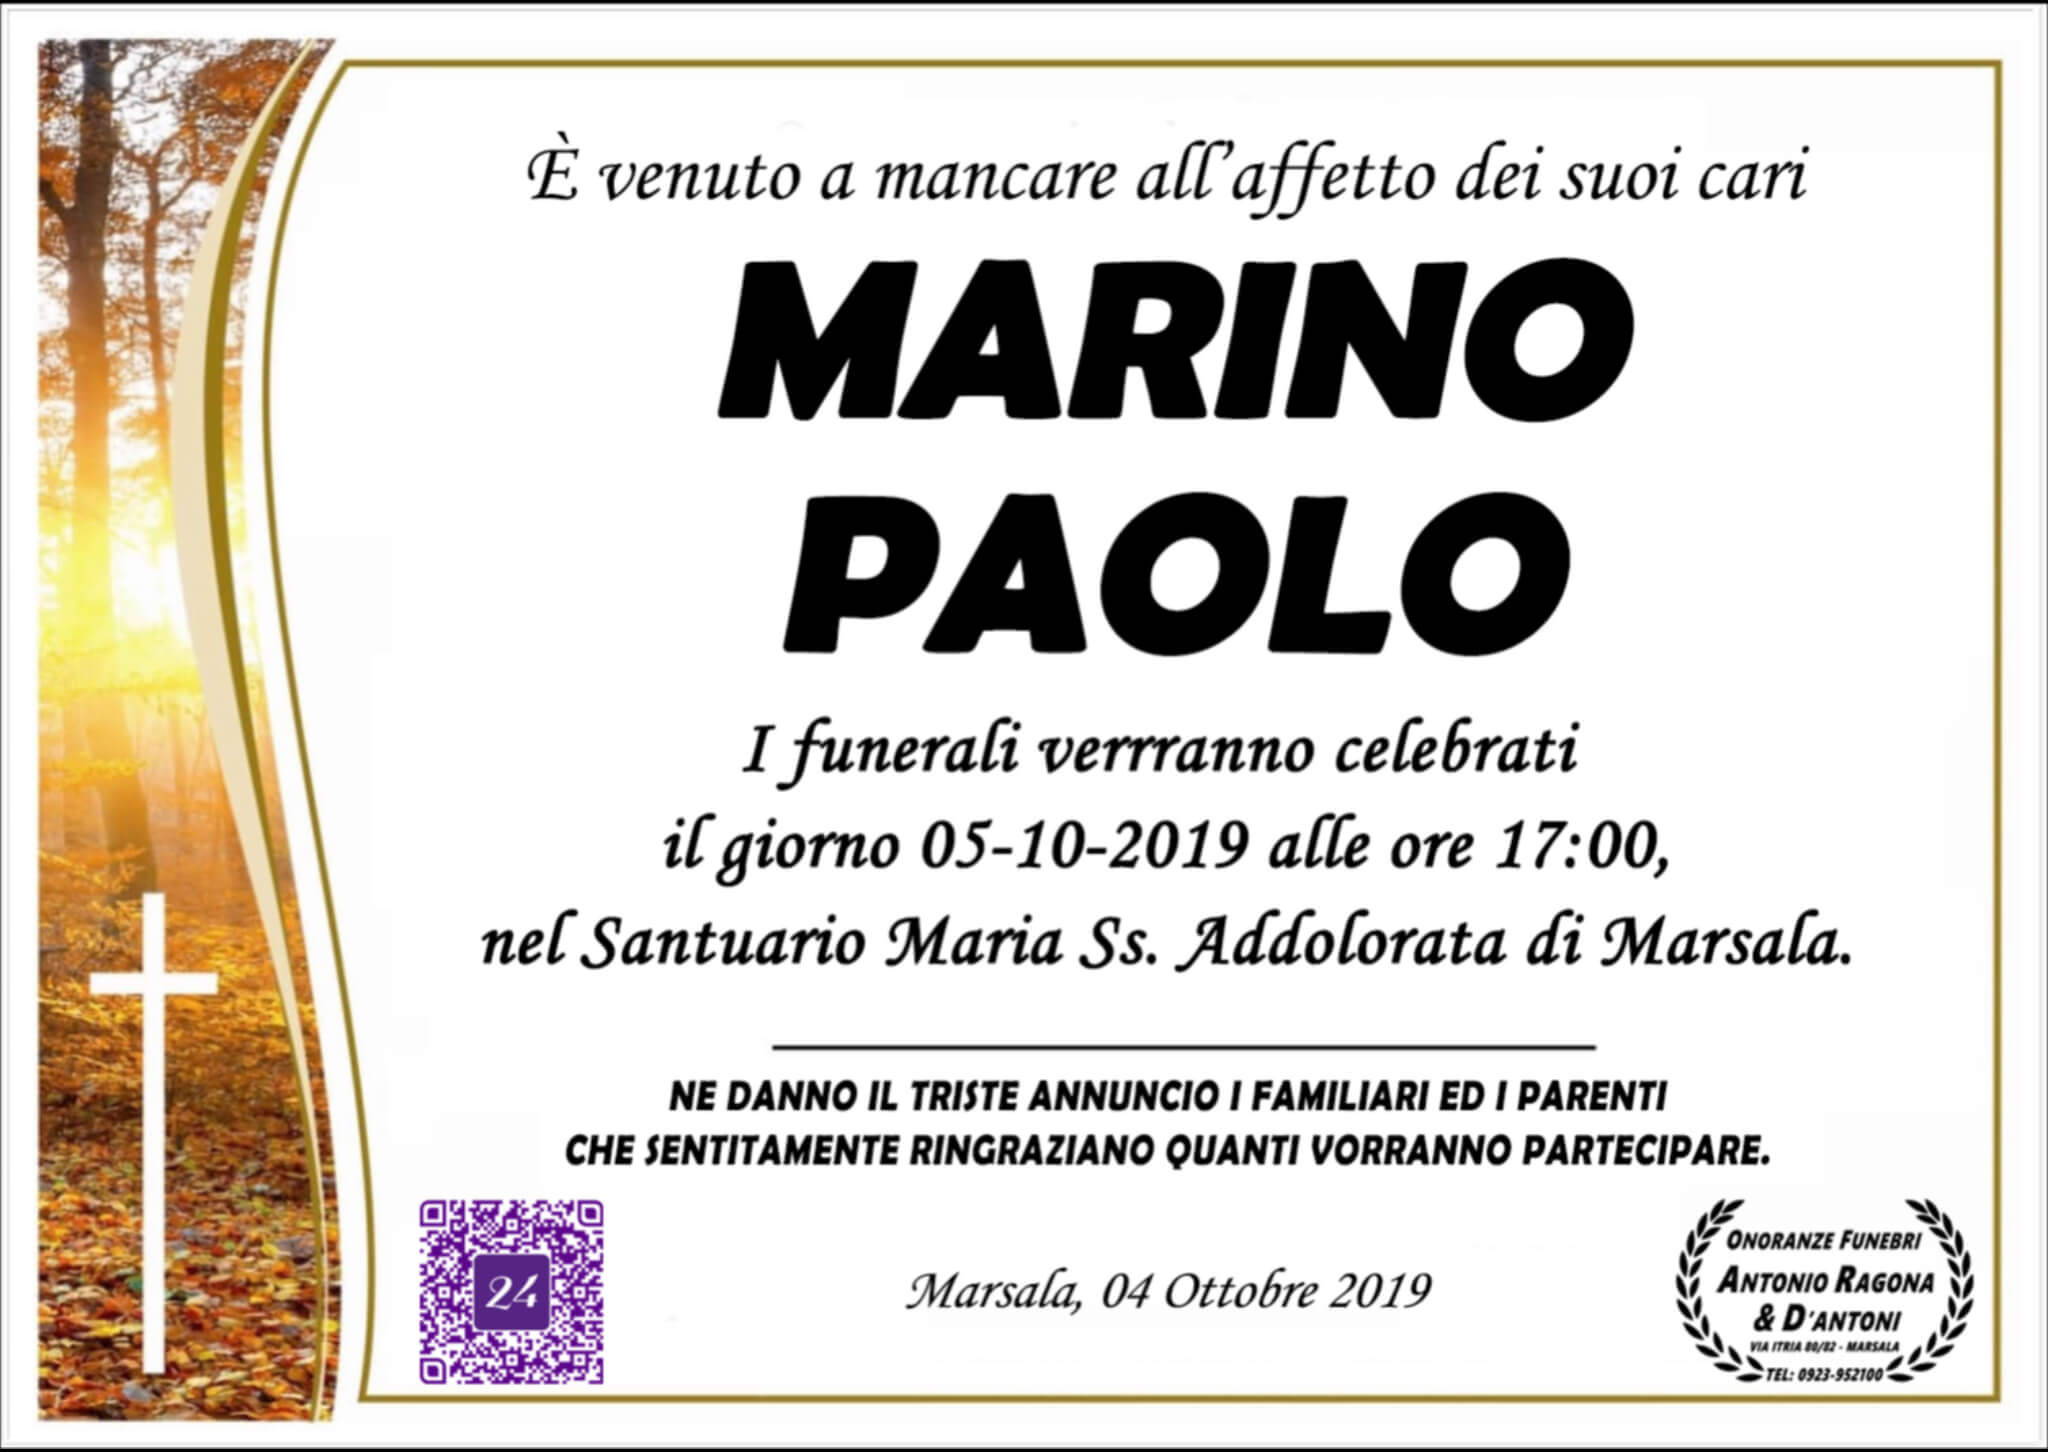 Paolo Marino